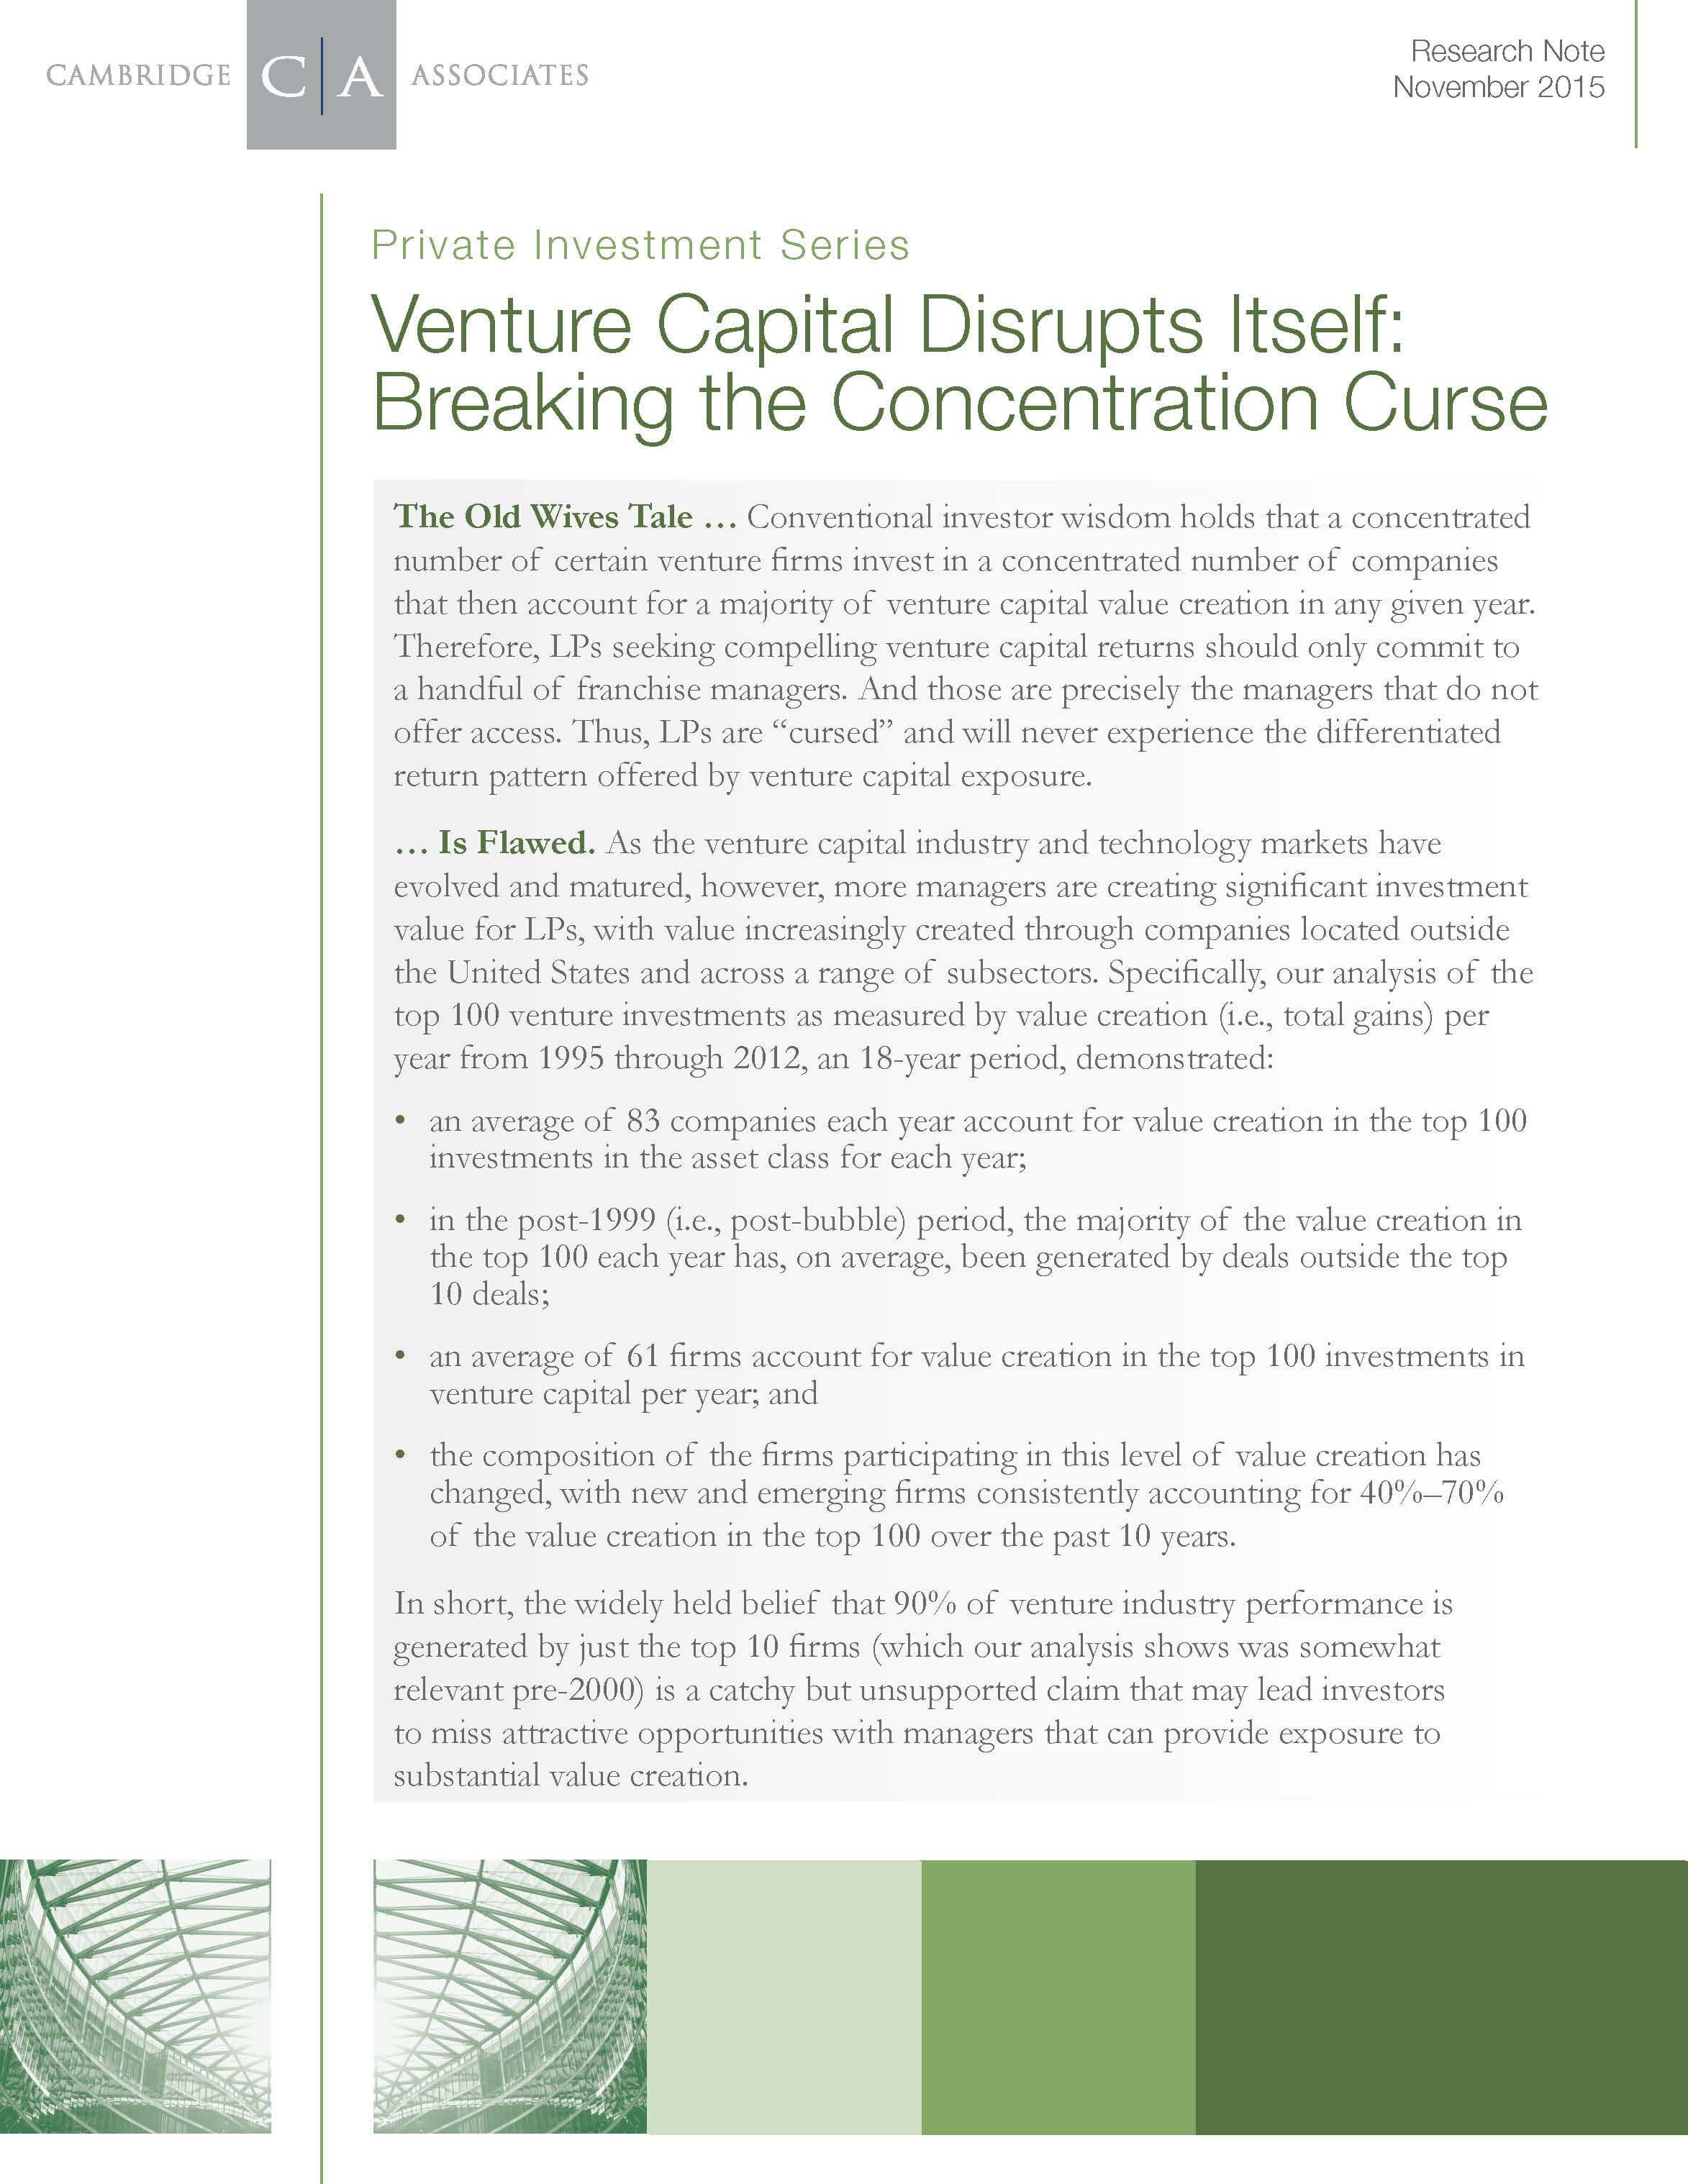 venture capital disrupts itself